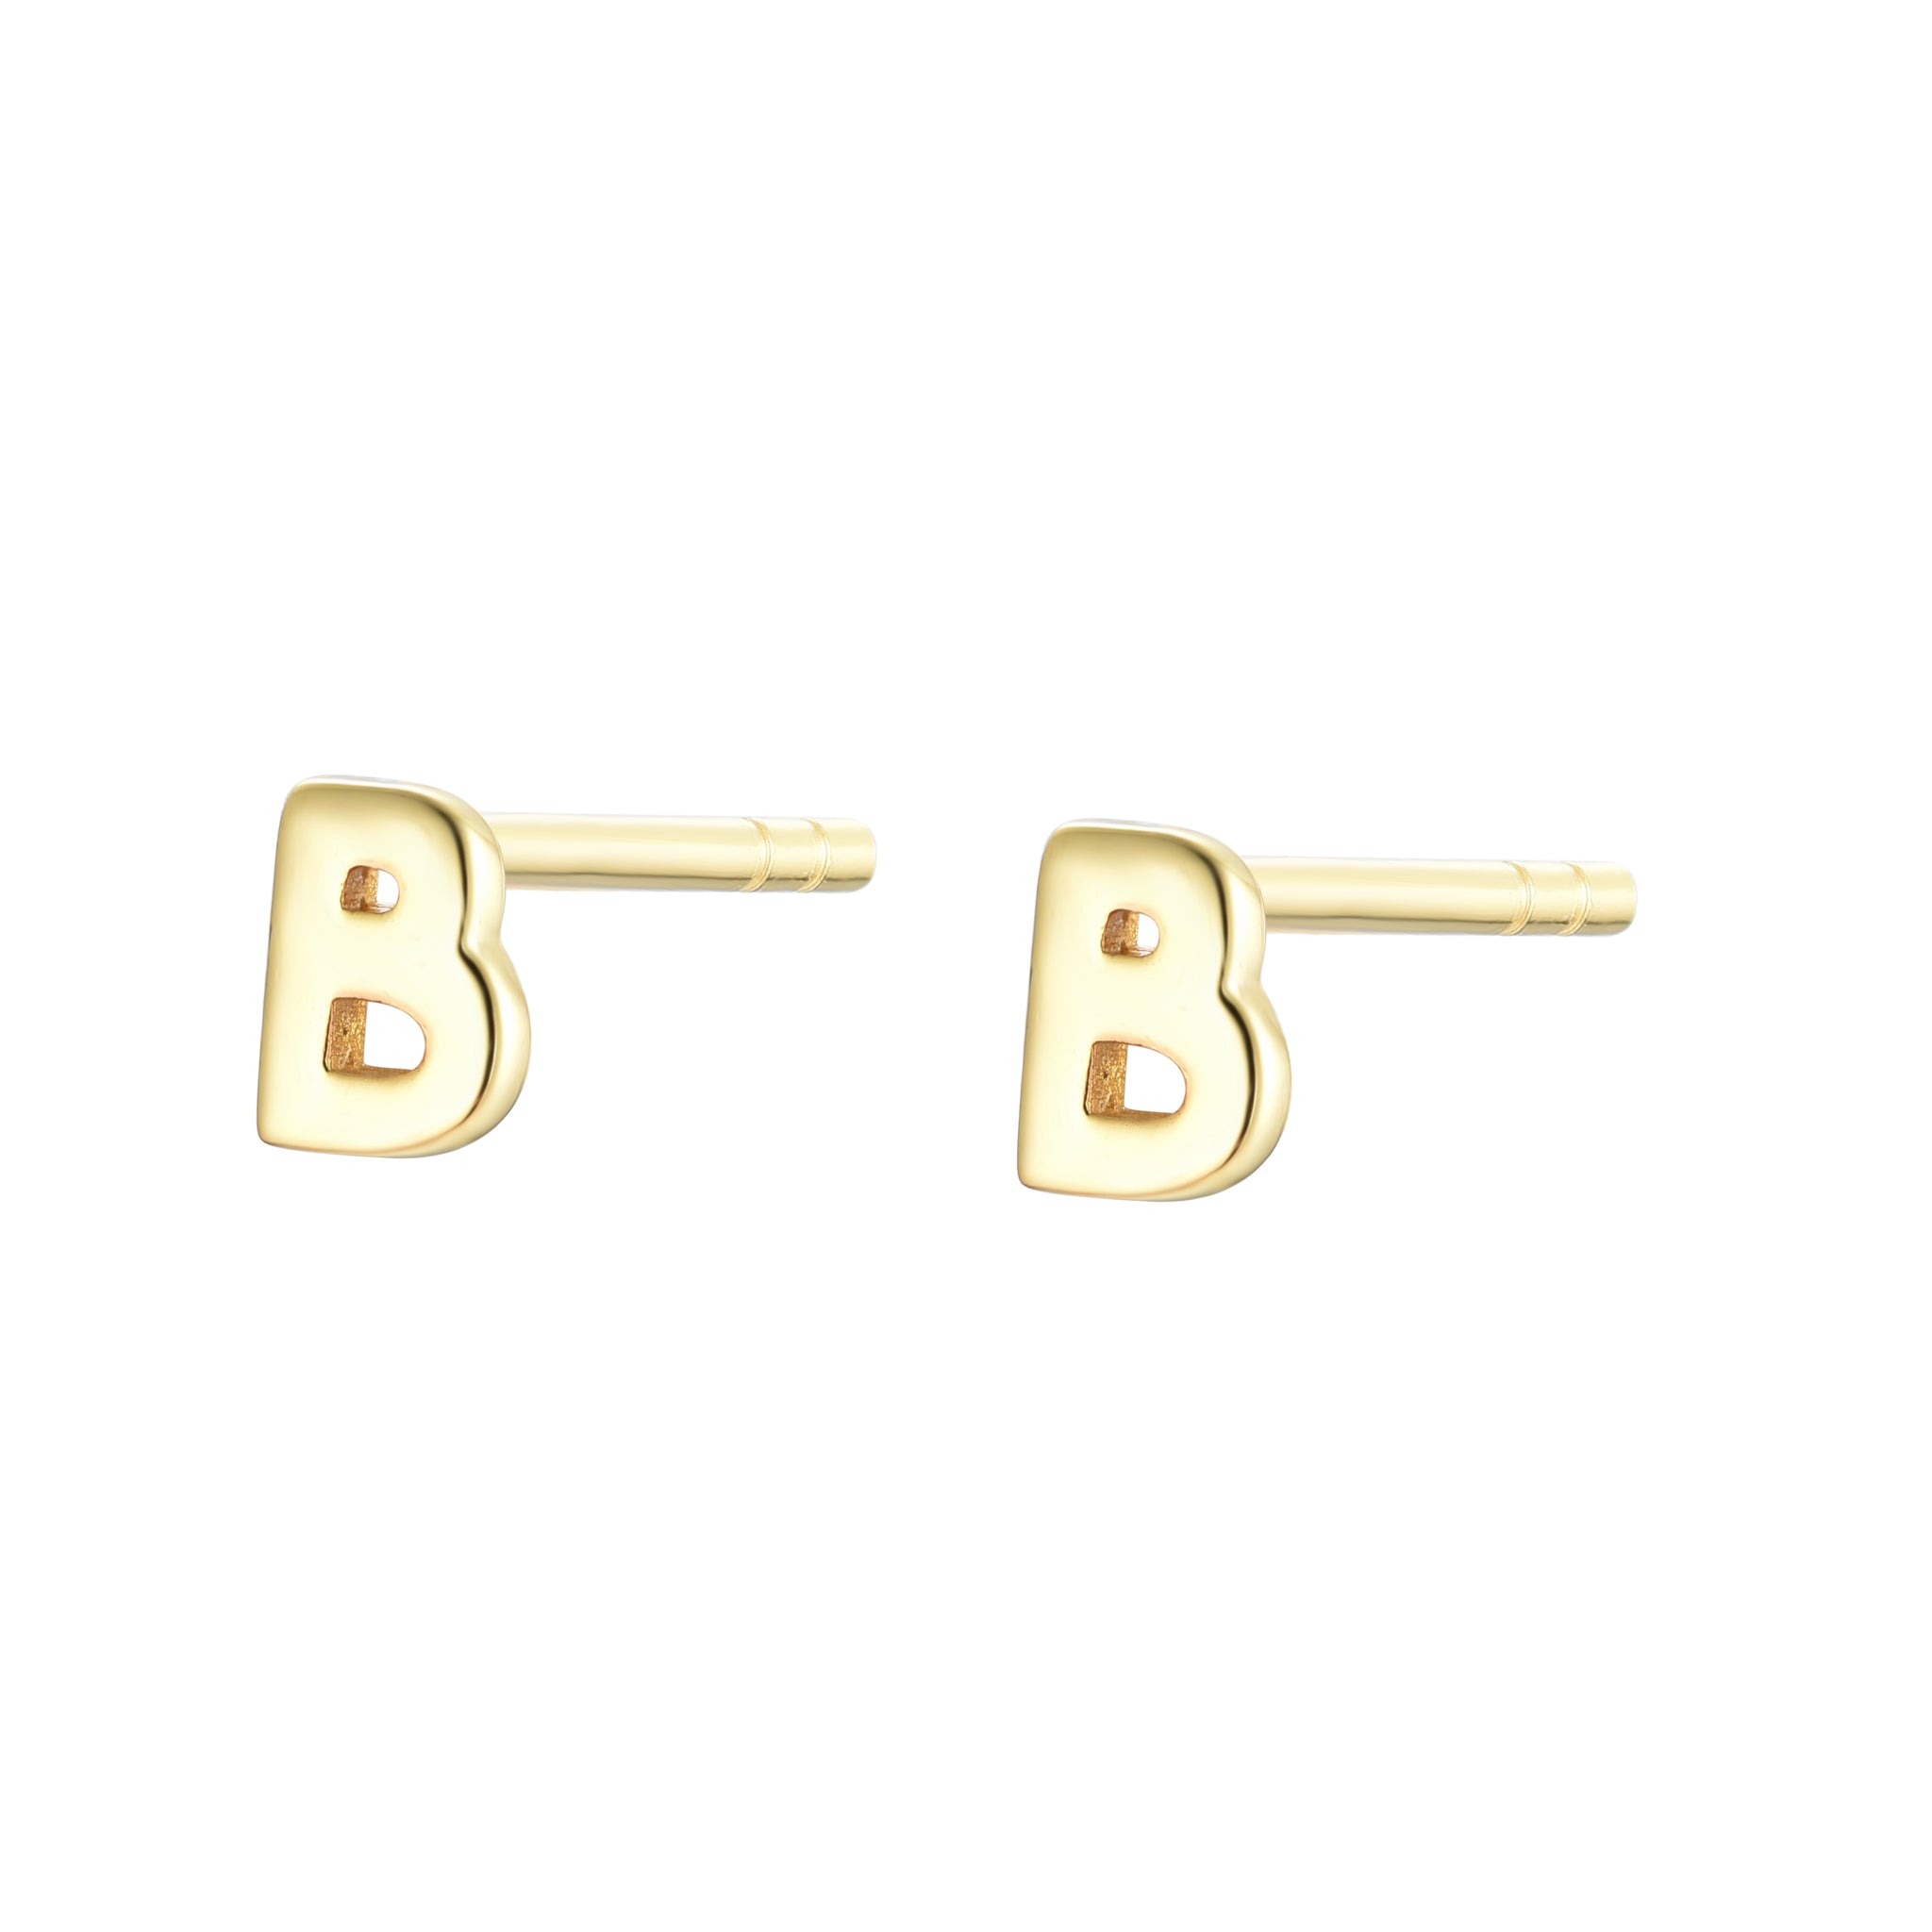 EG-126/G - Initial Earrings (Sold as a Pair )